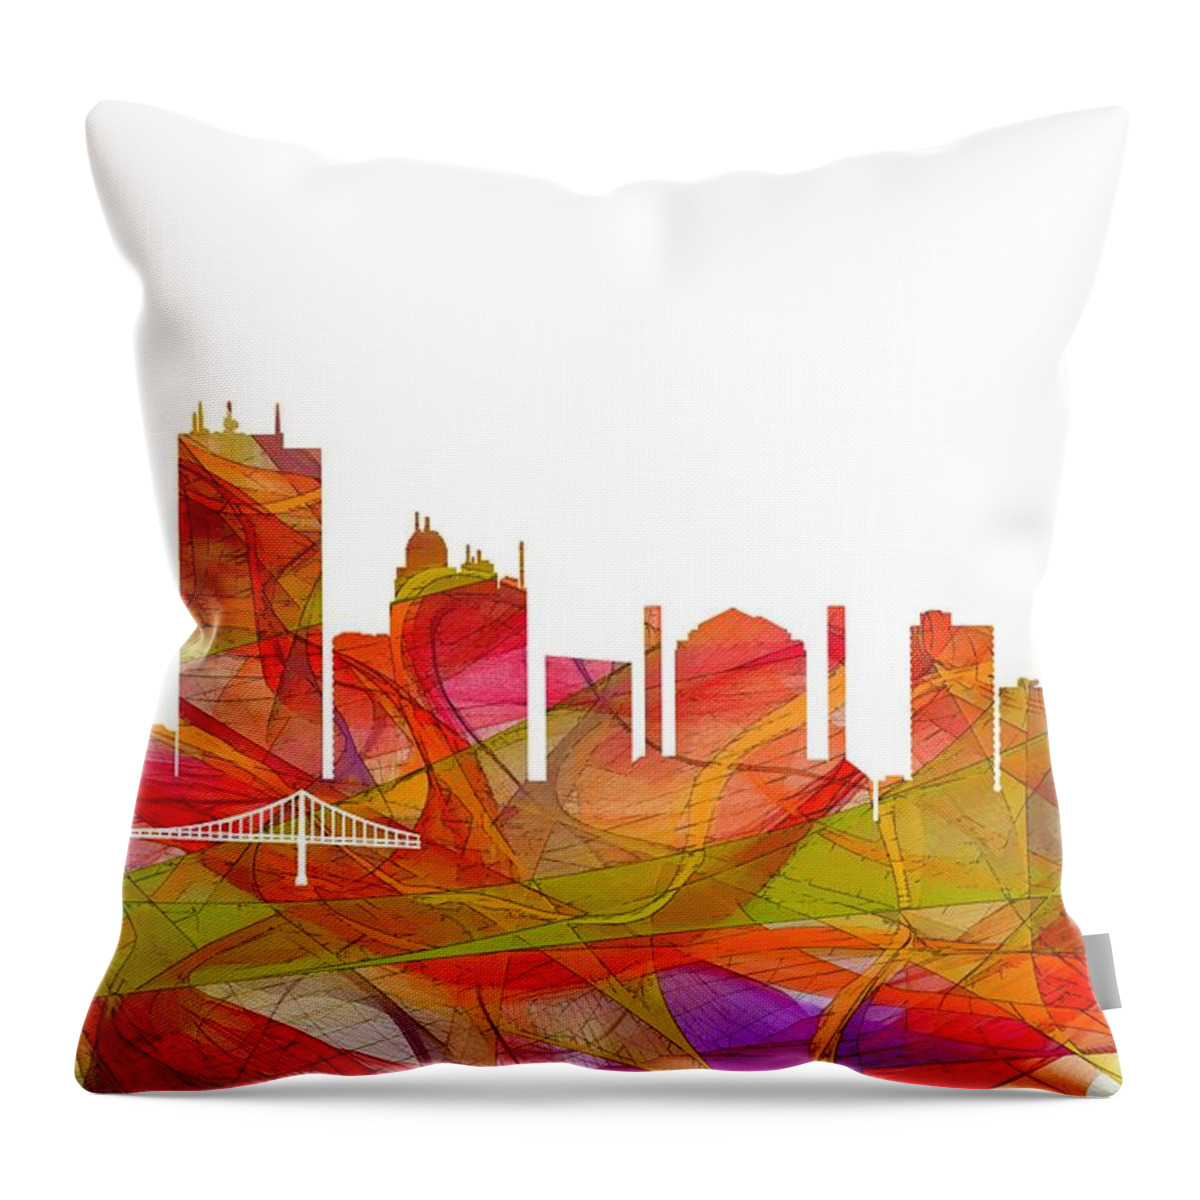 Toledo Ohio Skyline Throw Pillow featuring the digital art Toledo Ohio Skyline #8 by Marlene Watson